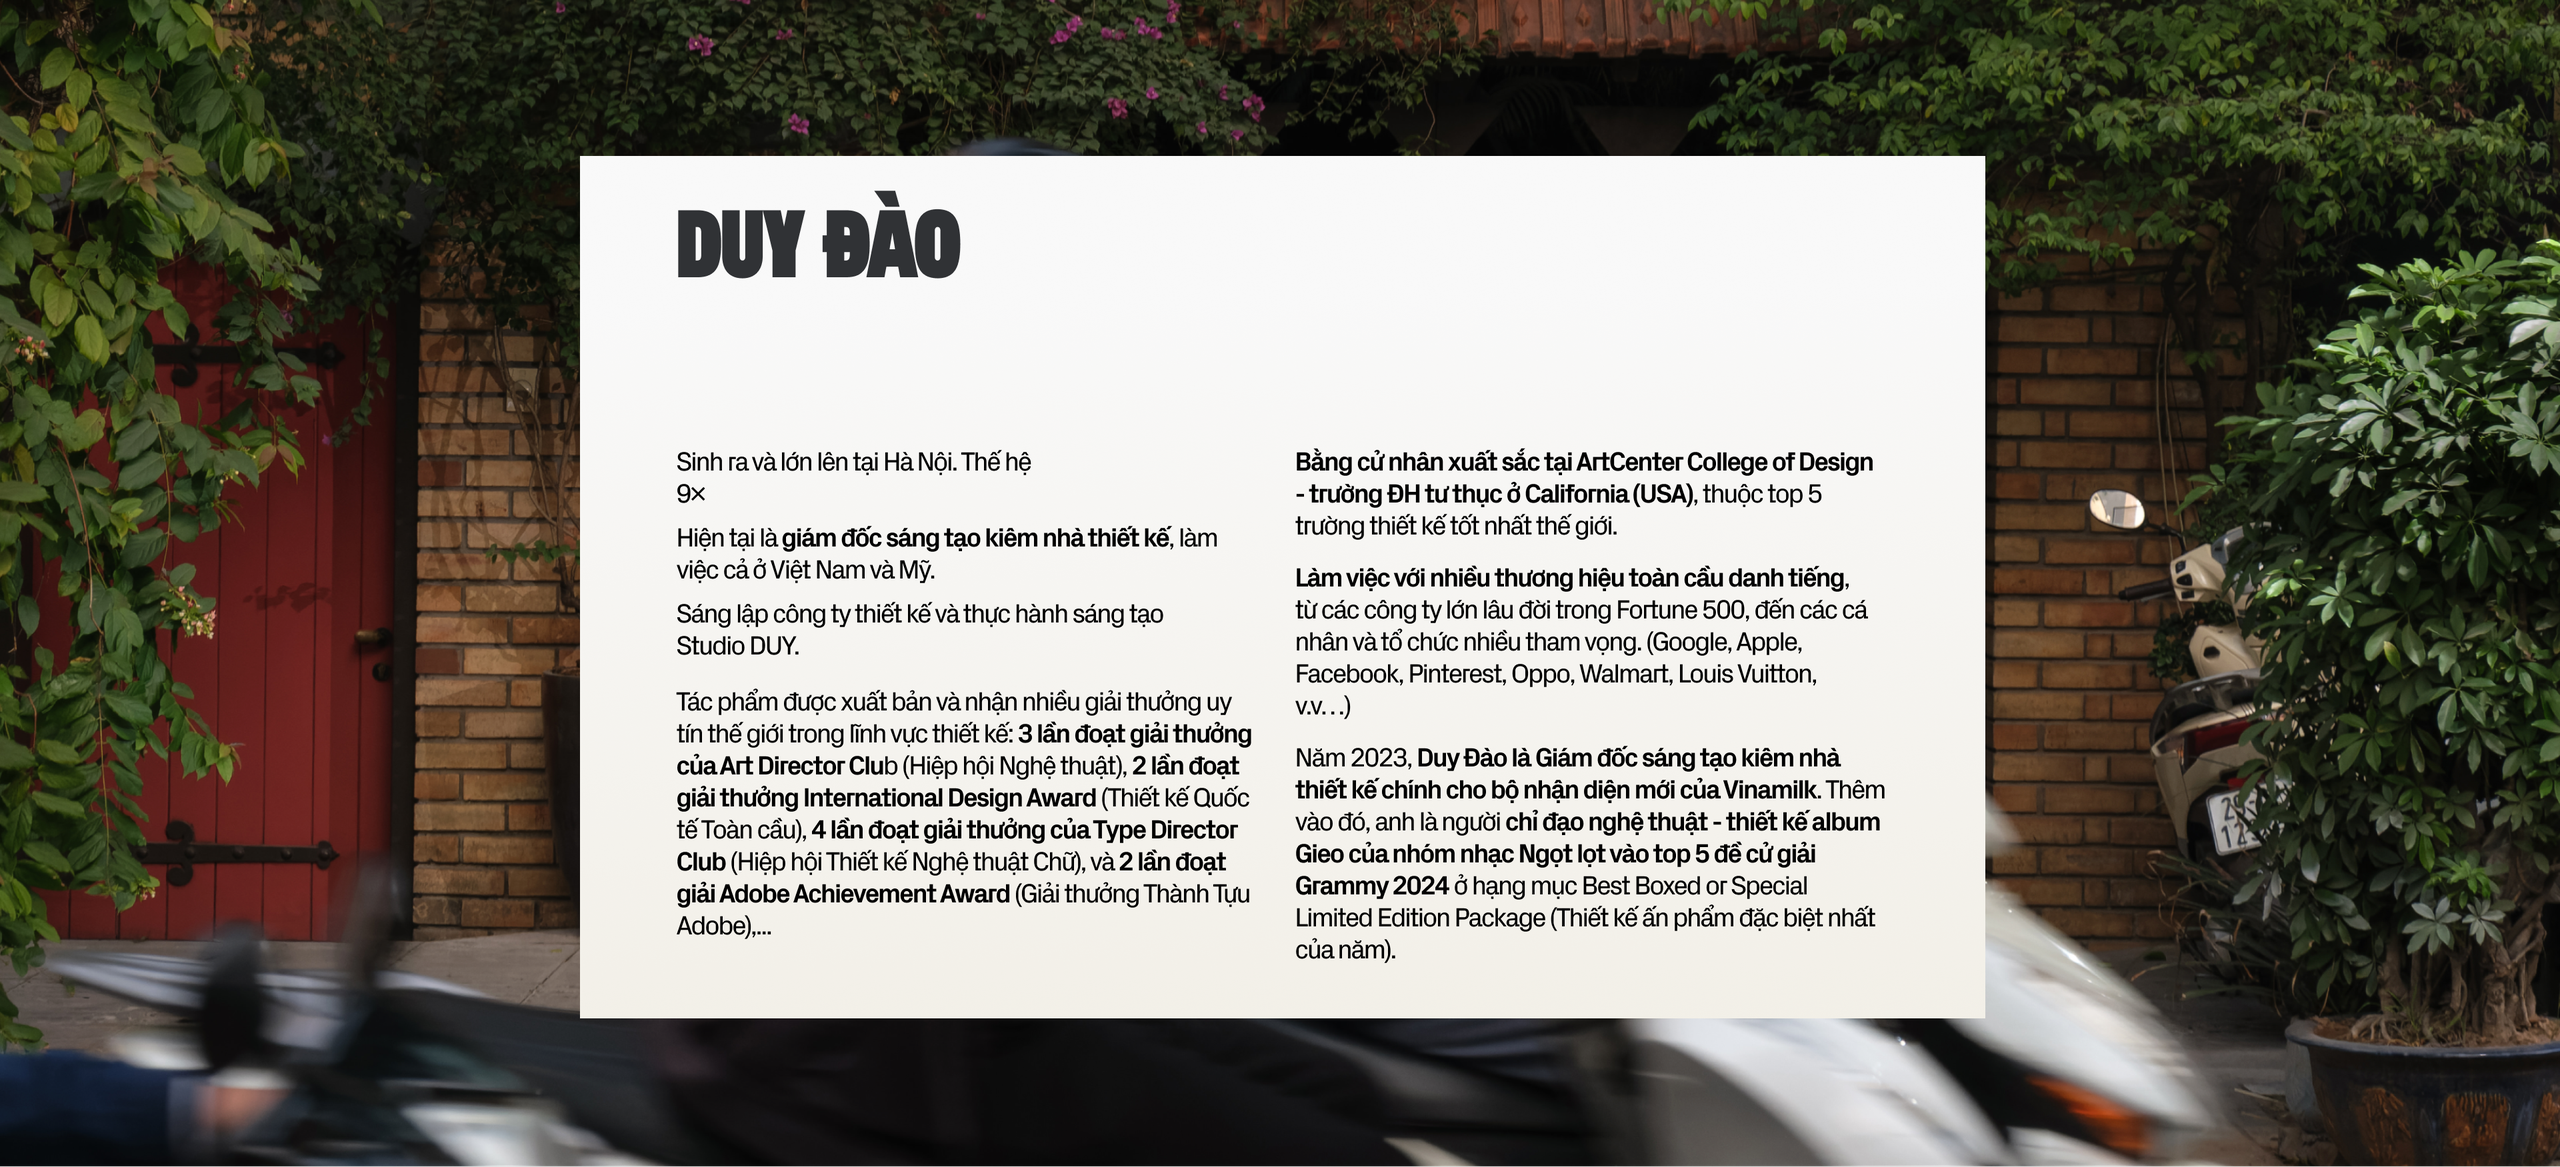 Duy Đào - chàng trai 100% Việt Nam vươn tới Grammy 2024: Ước mơ phất cờ, “cưỡi sóng” cùng thế hệ trẻ và hành trình tìm kiếm sự lãng mạn trong mọi việc mình làm - Ảnh 1.